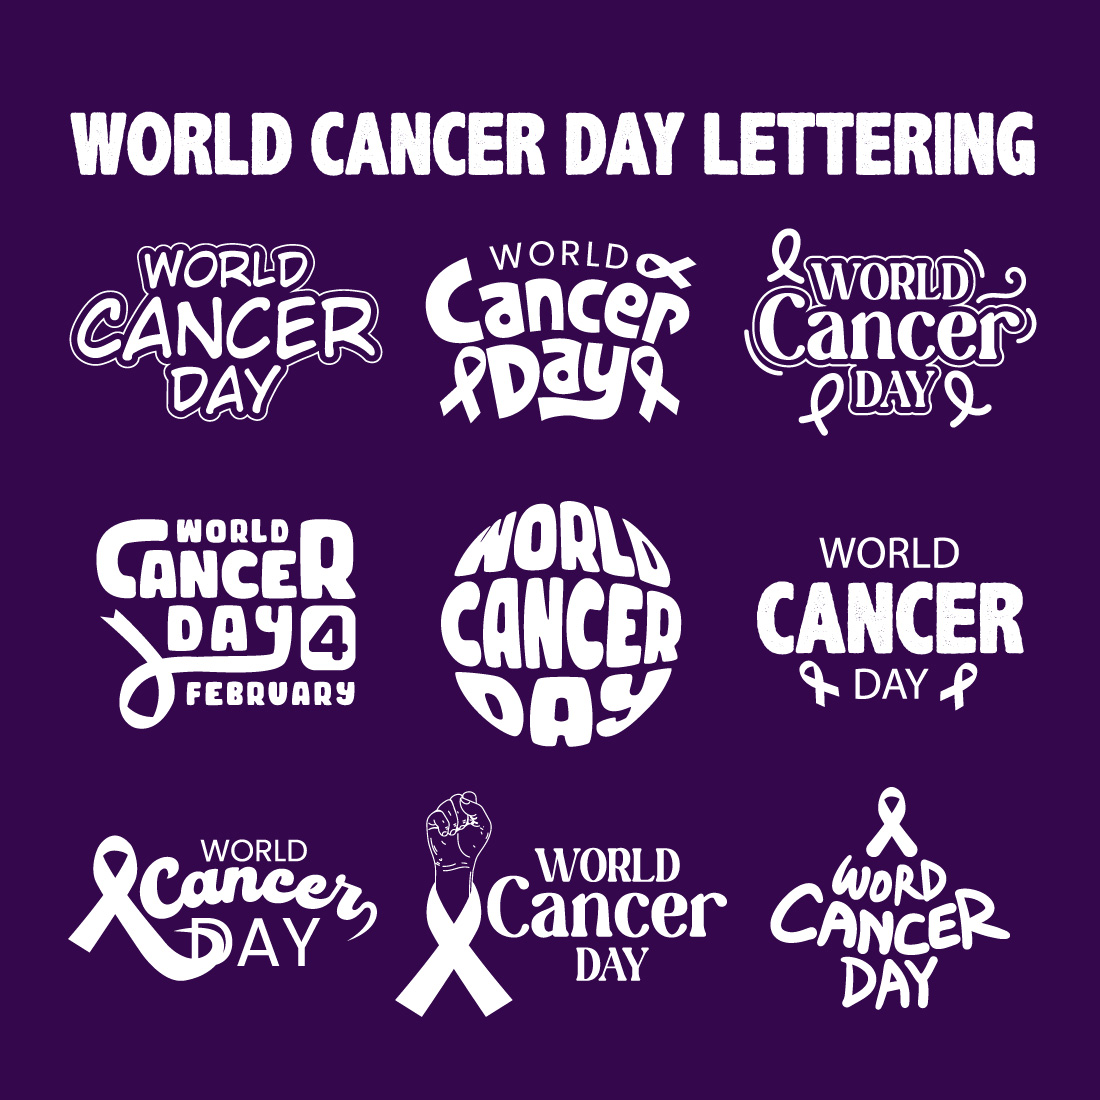 Lettering Cancer Day Illustration Bundle cover image.